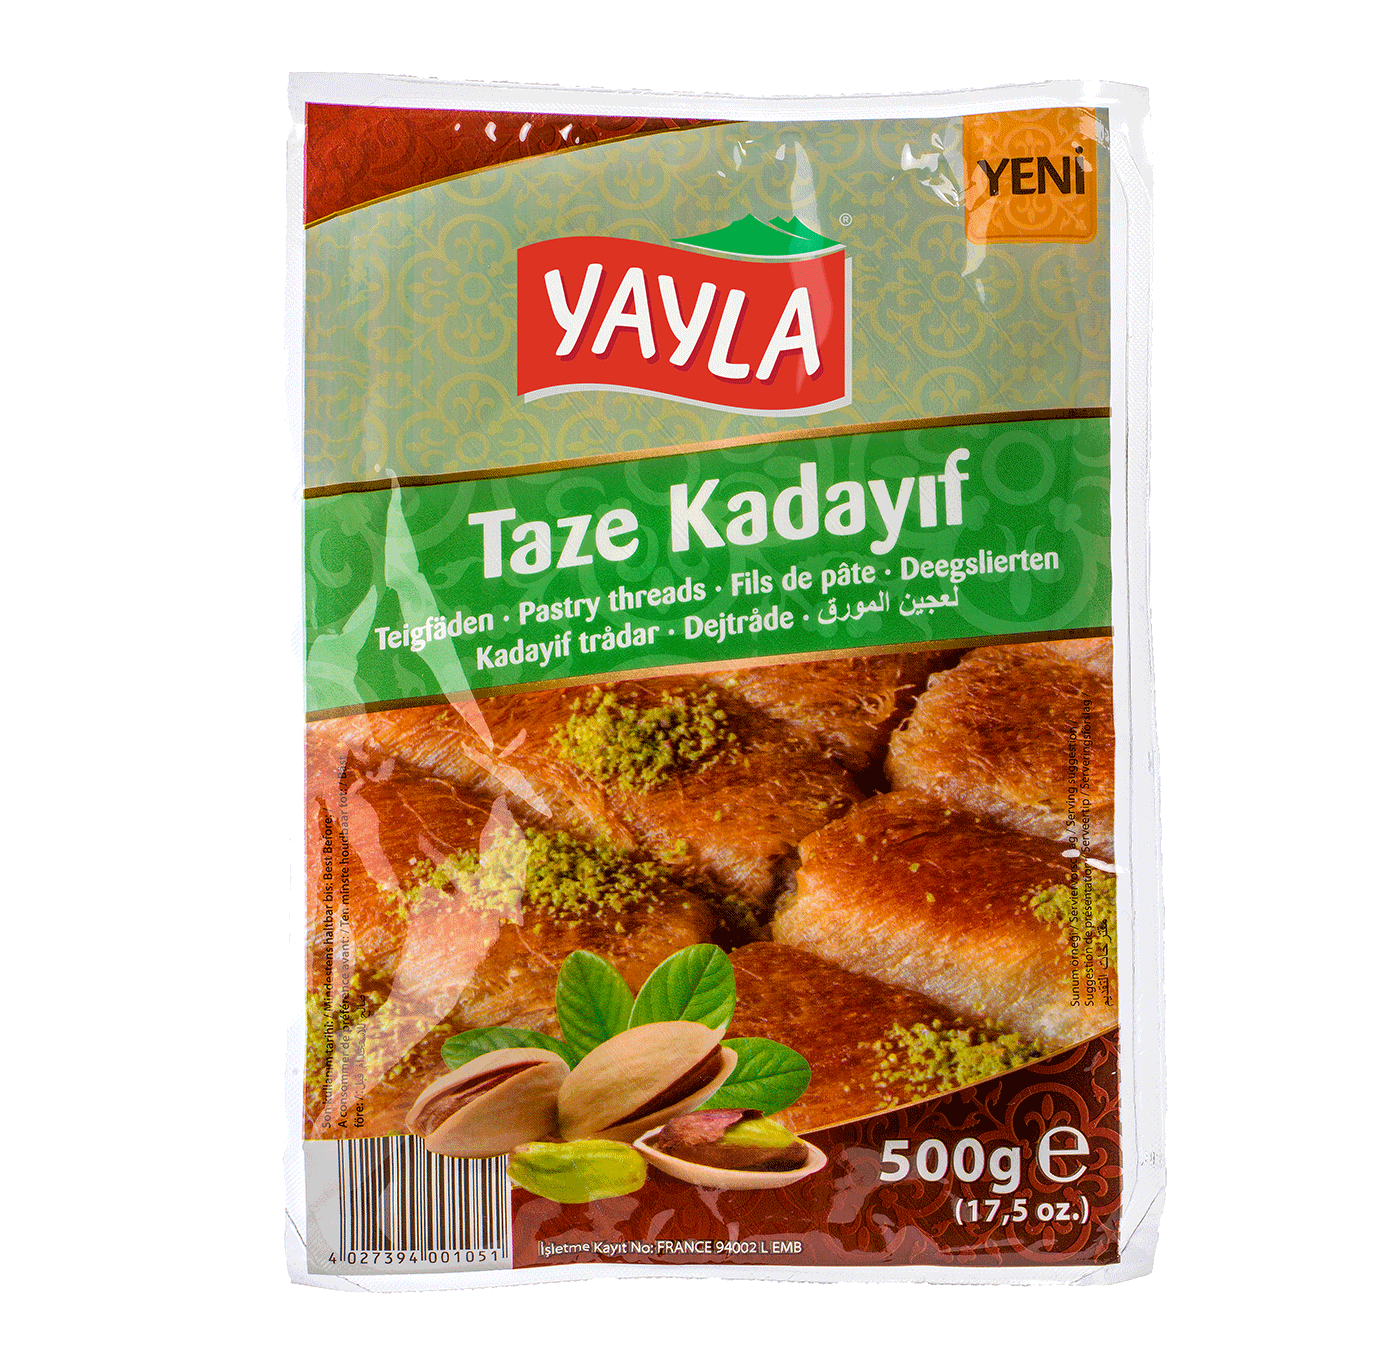 Yayla Taze Kadayif / Teigfäden 500g